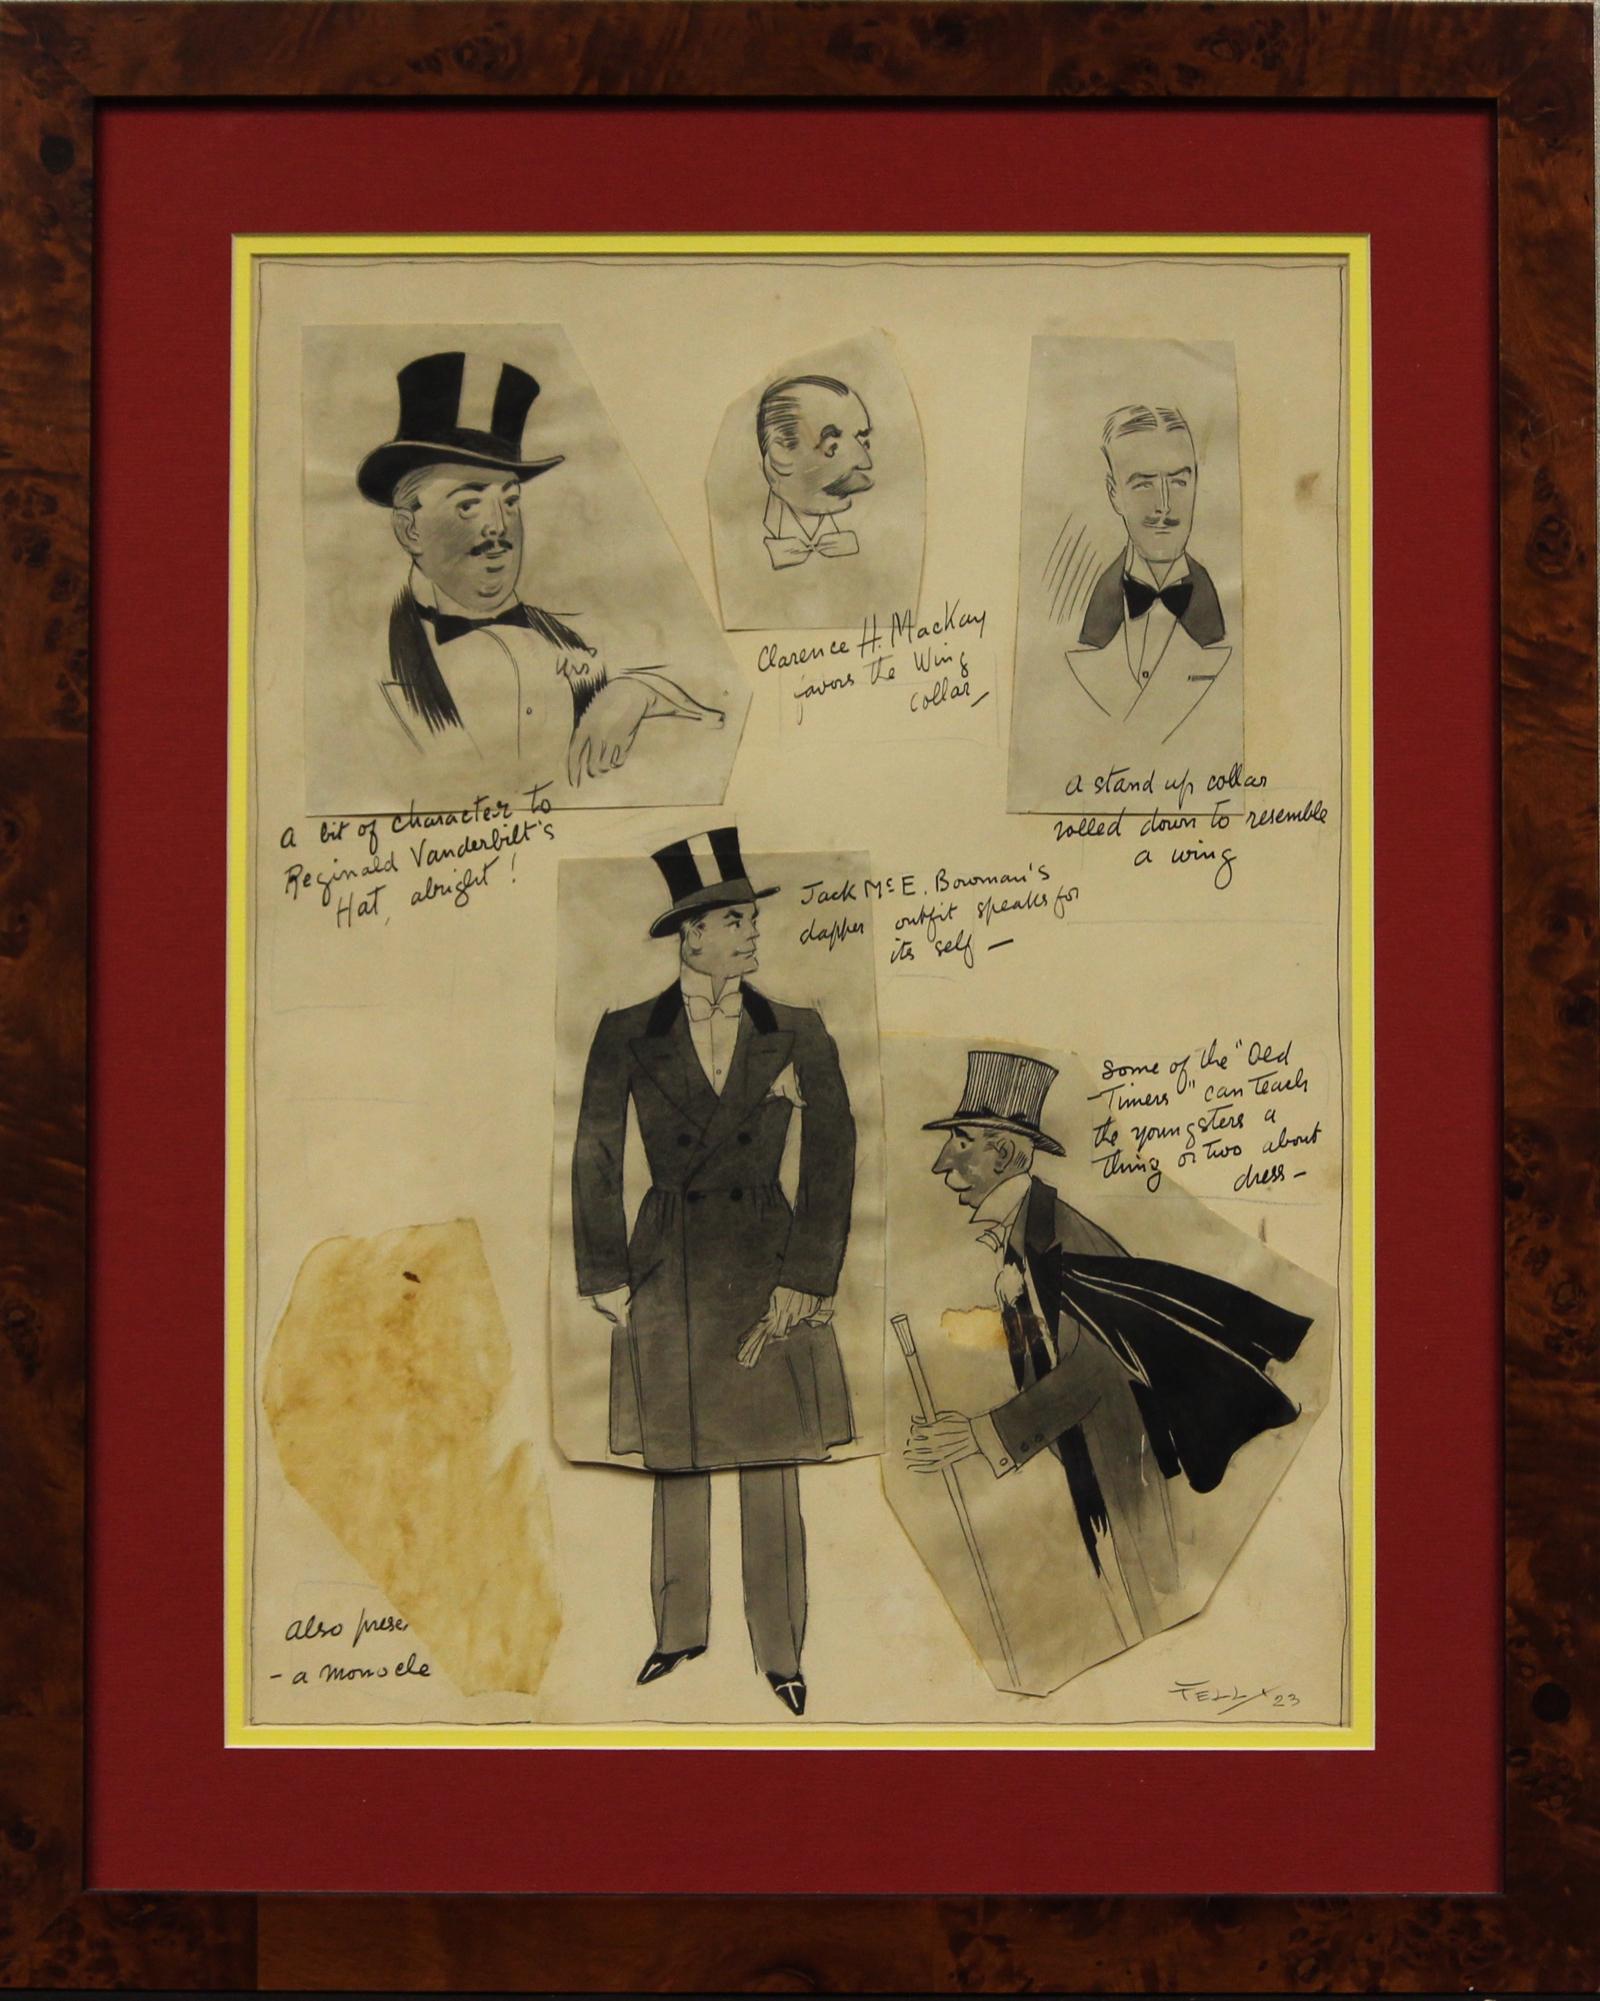 Feder & Tinte Herrenmode-Decoupage-Illustration von 'Fell' 1923 (LR), die 5 Herren zeigt, darunter: Reginald Vanderbilt, Clarence MacKay & Jack Mc E Bowman in eleganter formeller Kleidung! 

Bildgröße: 17 1/4 "H x 12 1/2 "W

Rahmengröße: 23 1/4 "H x